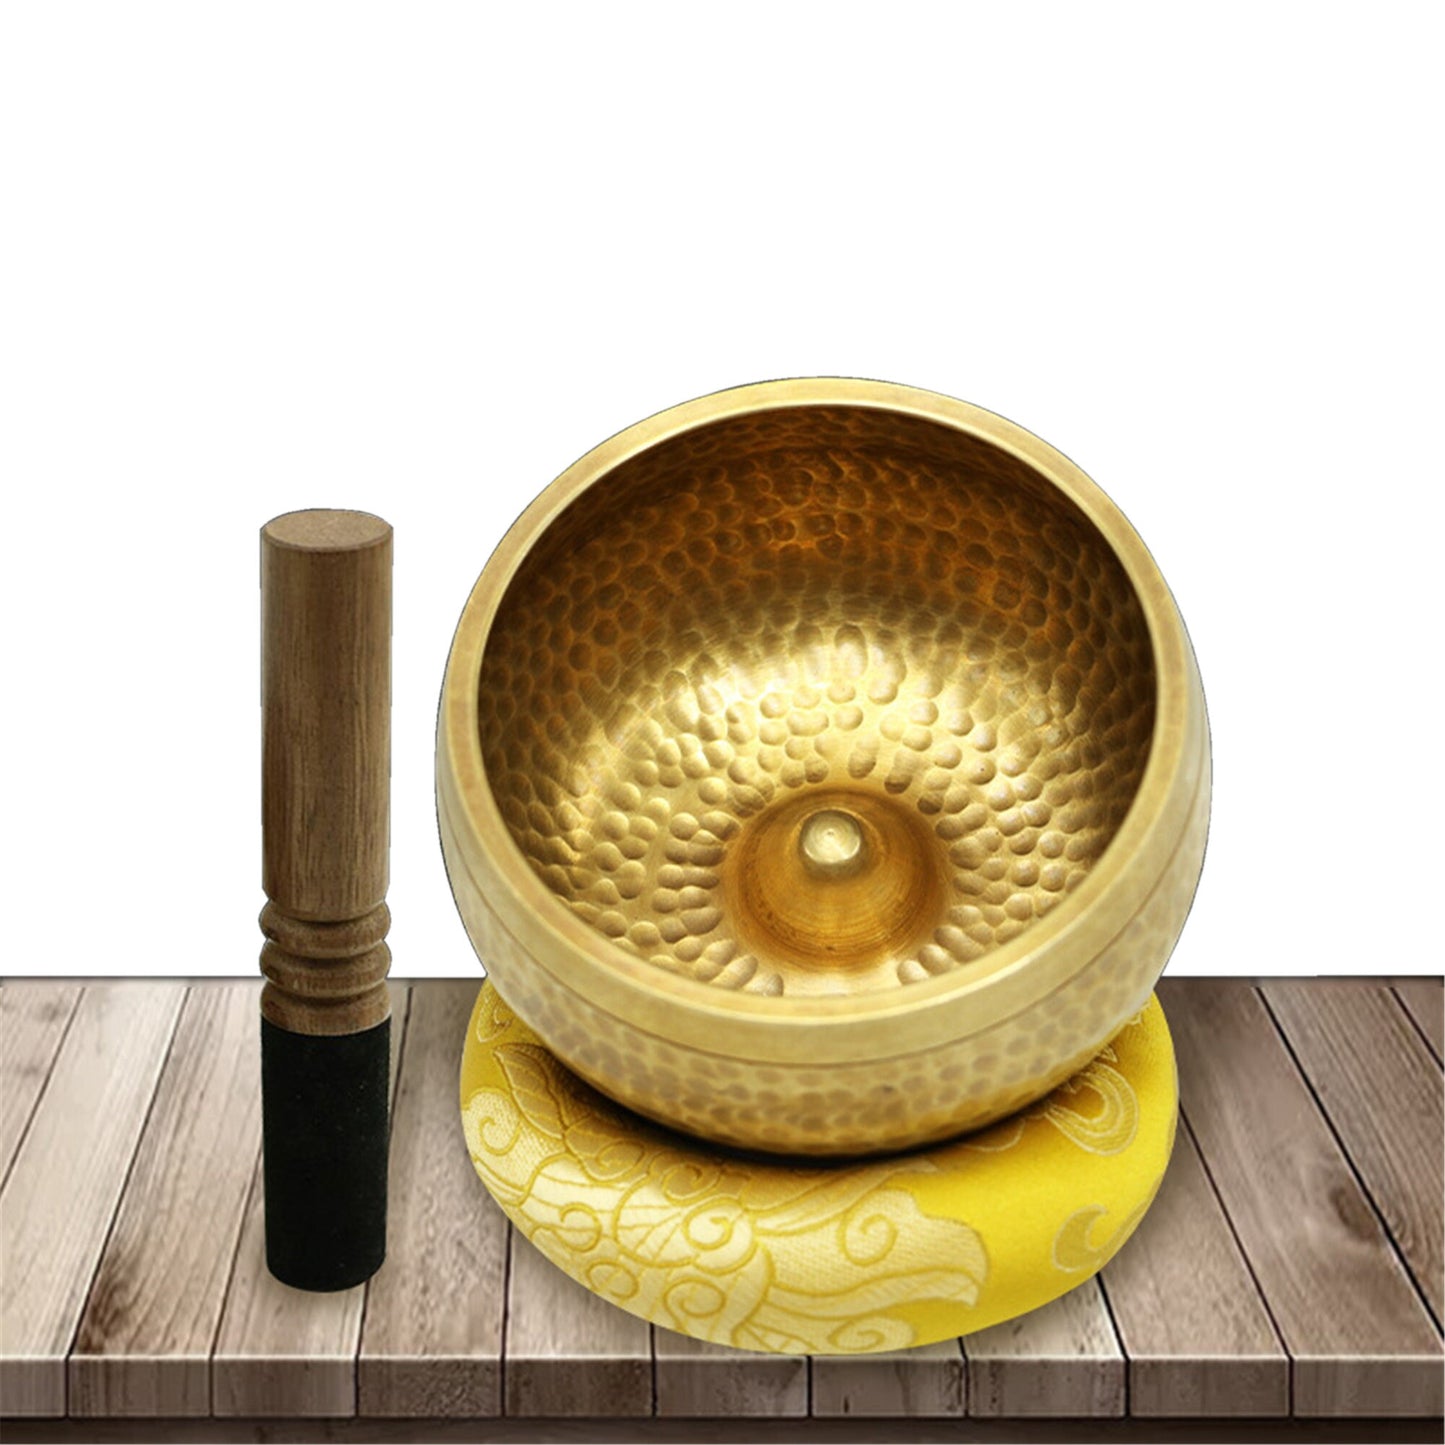 Gandhanra Hand-forged Tibetan Singing Bowl with Lingam Symbol